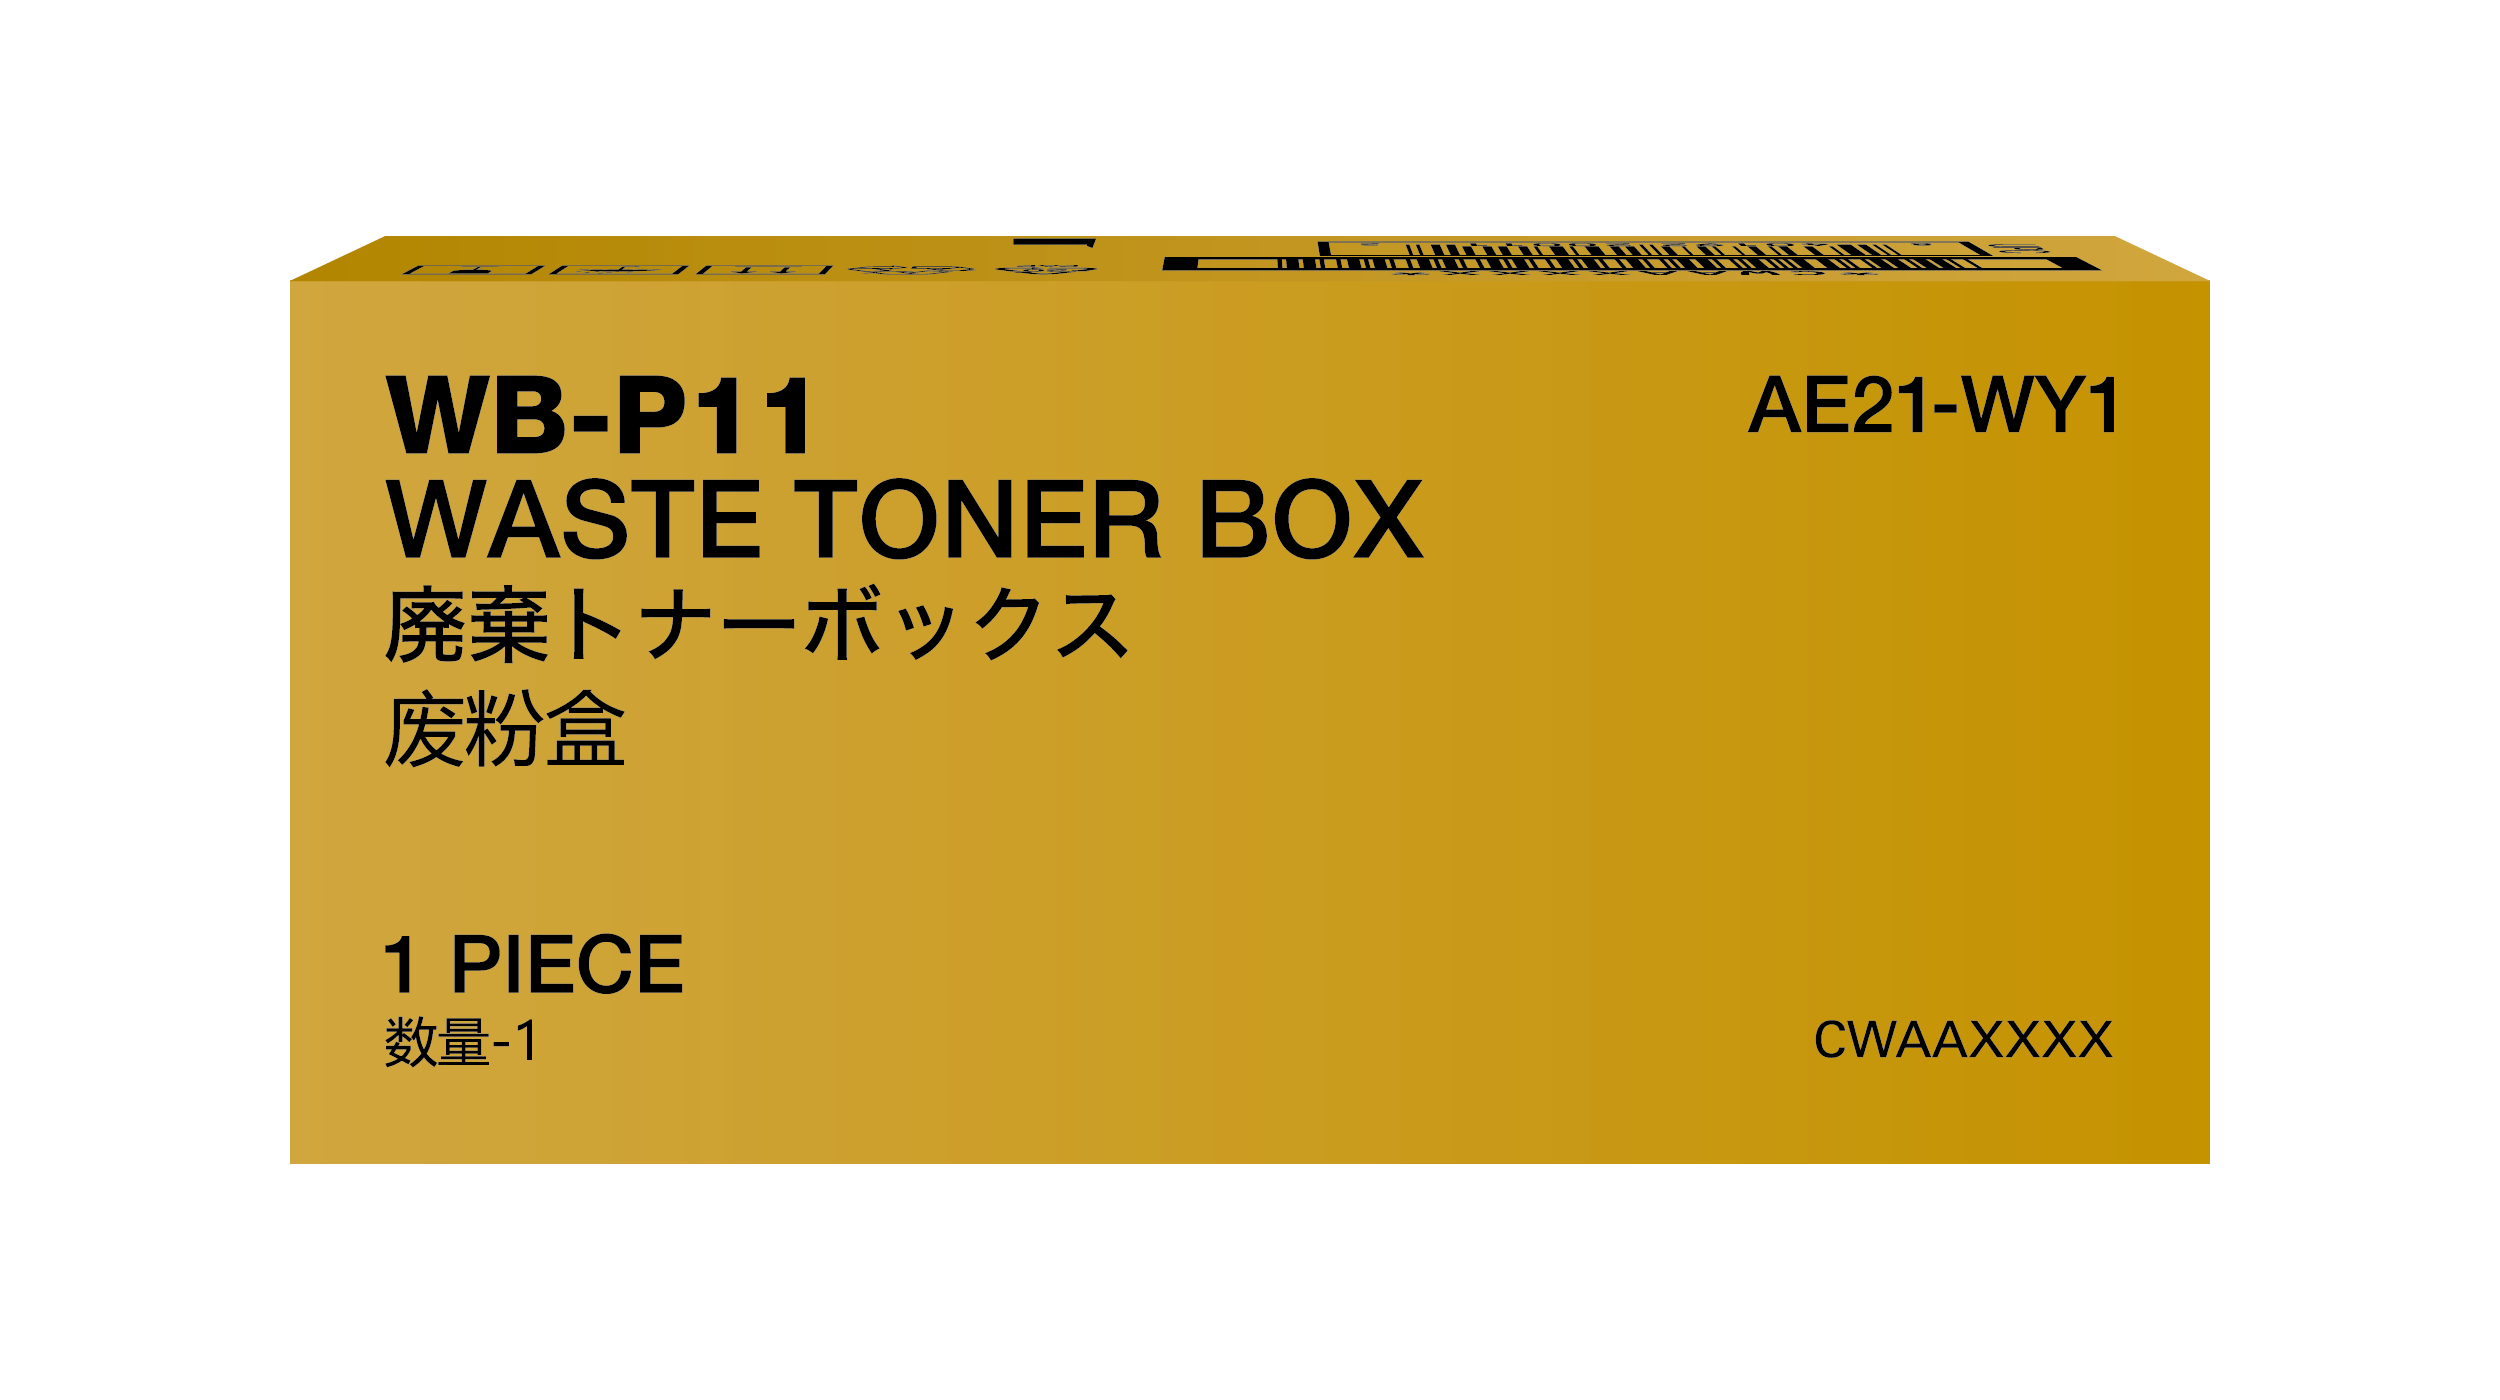 Toner Waste Box